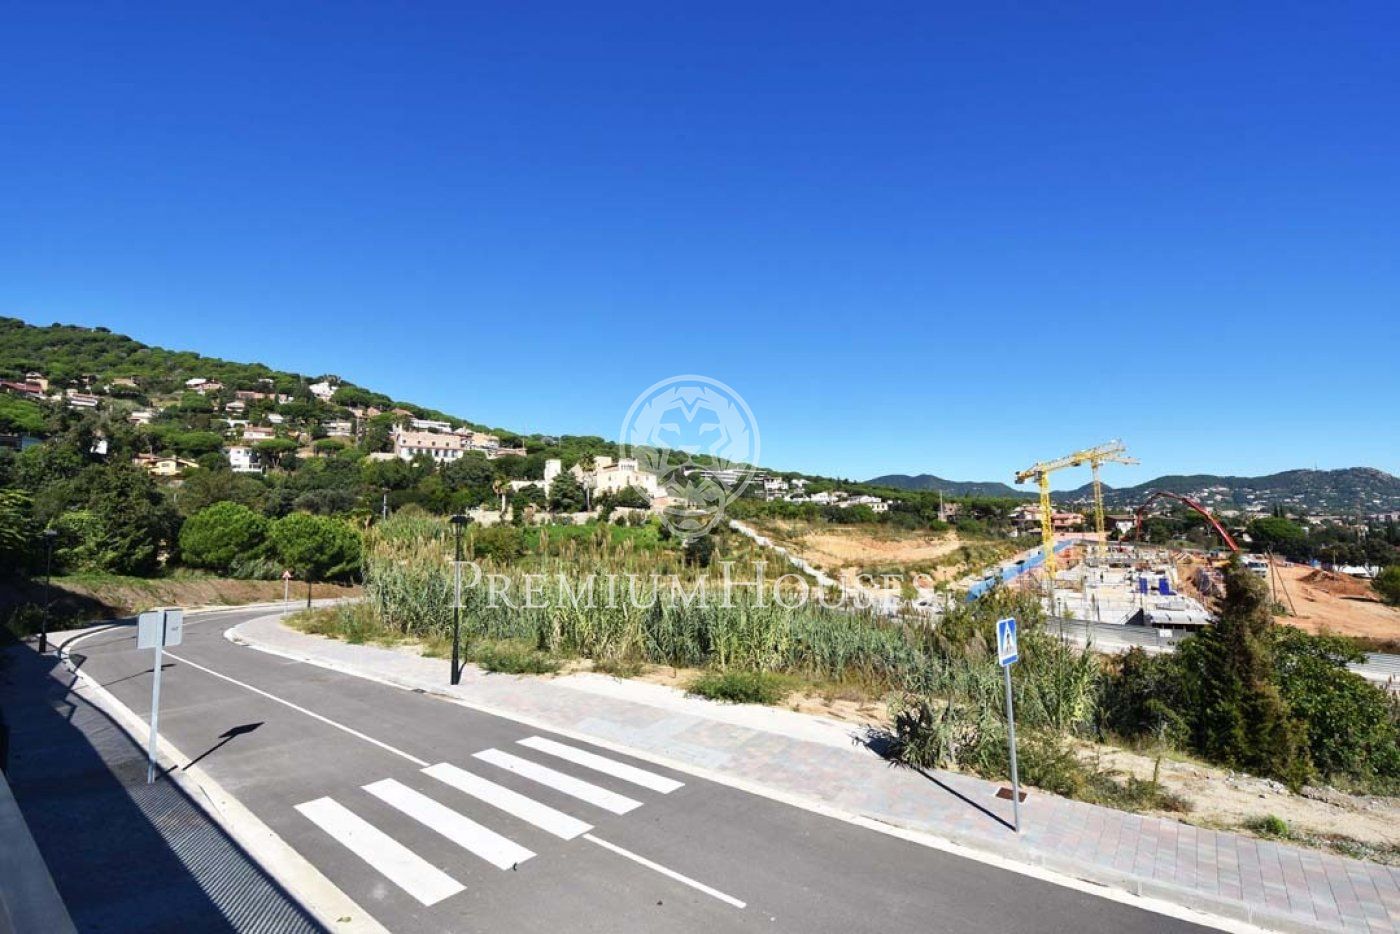 Terreny urbà a Premià de Dalt amb vistes a la mar